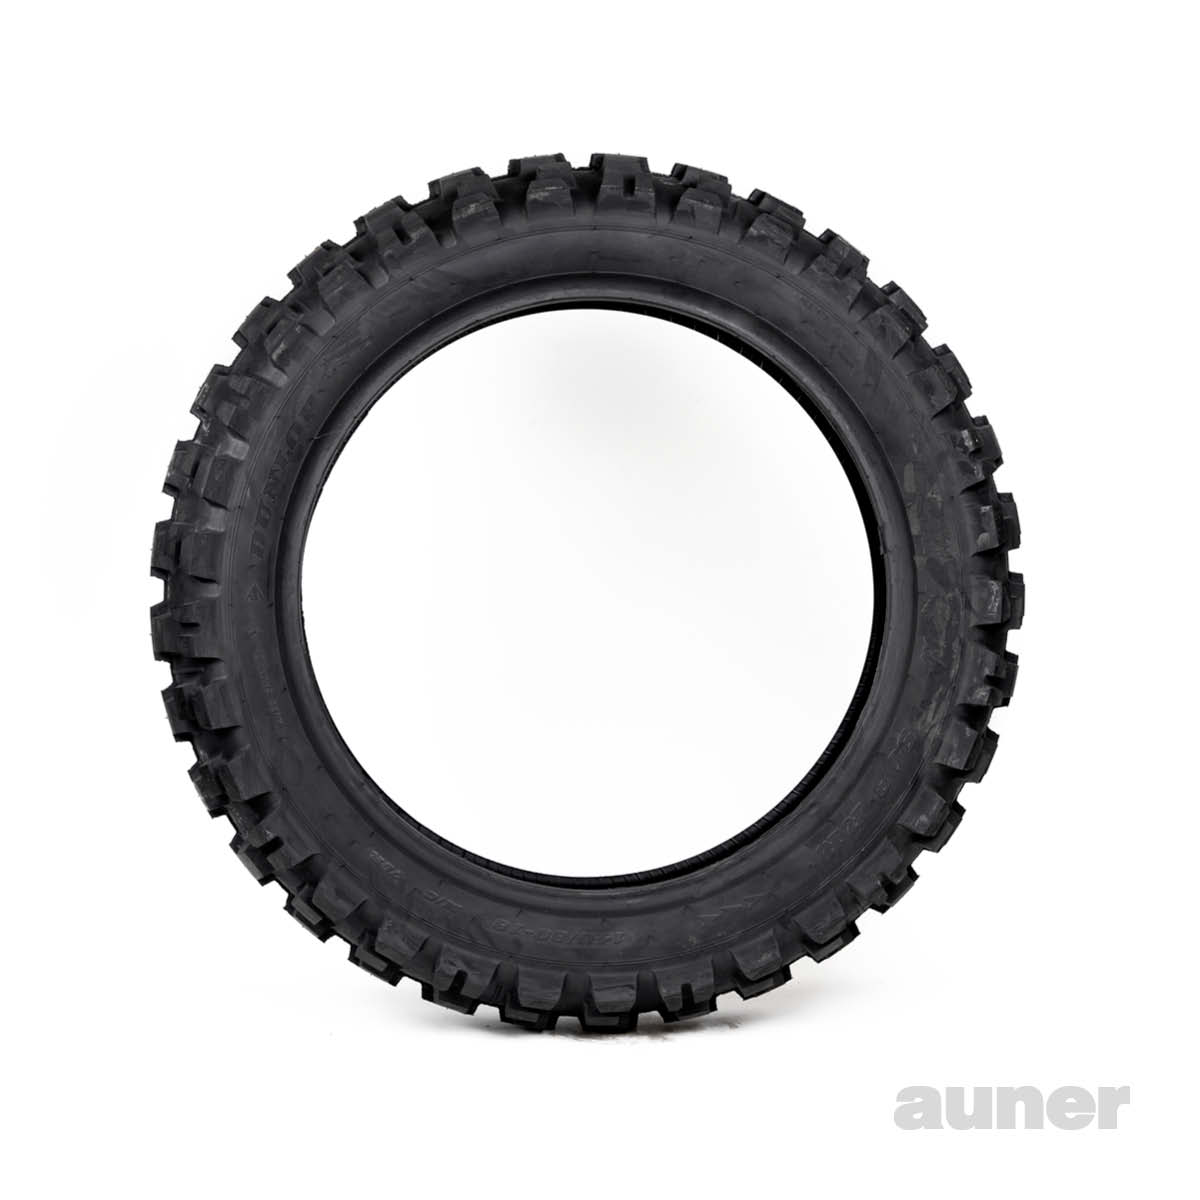 Reifen RR kaufen bei Dunlop D908 Auner online -